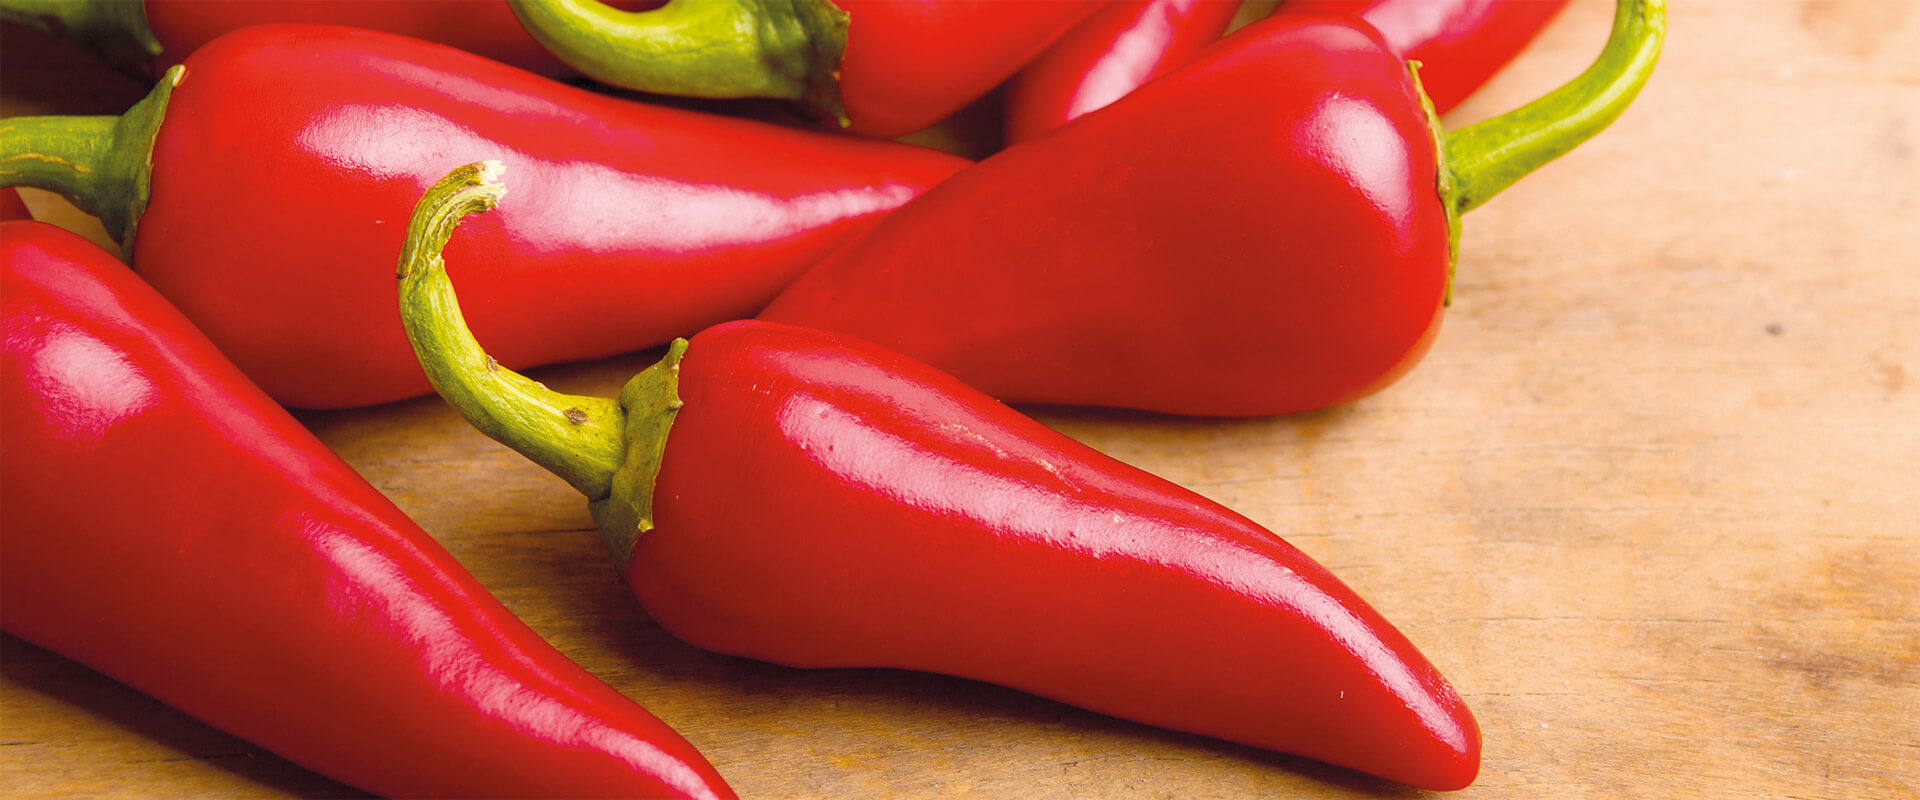 Chili properties and benefits – Fratelli Carli